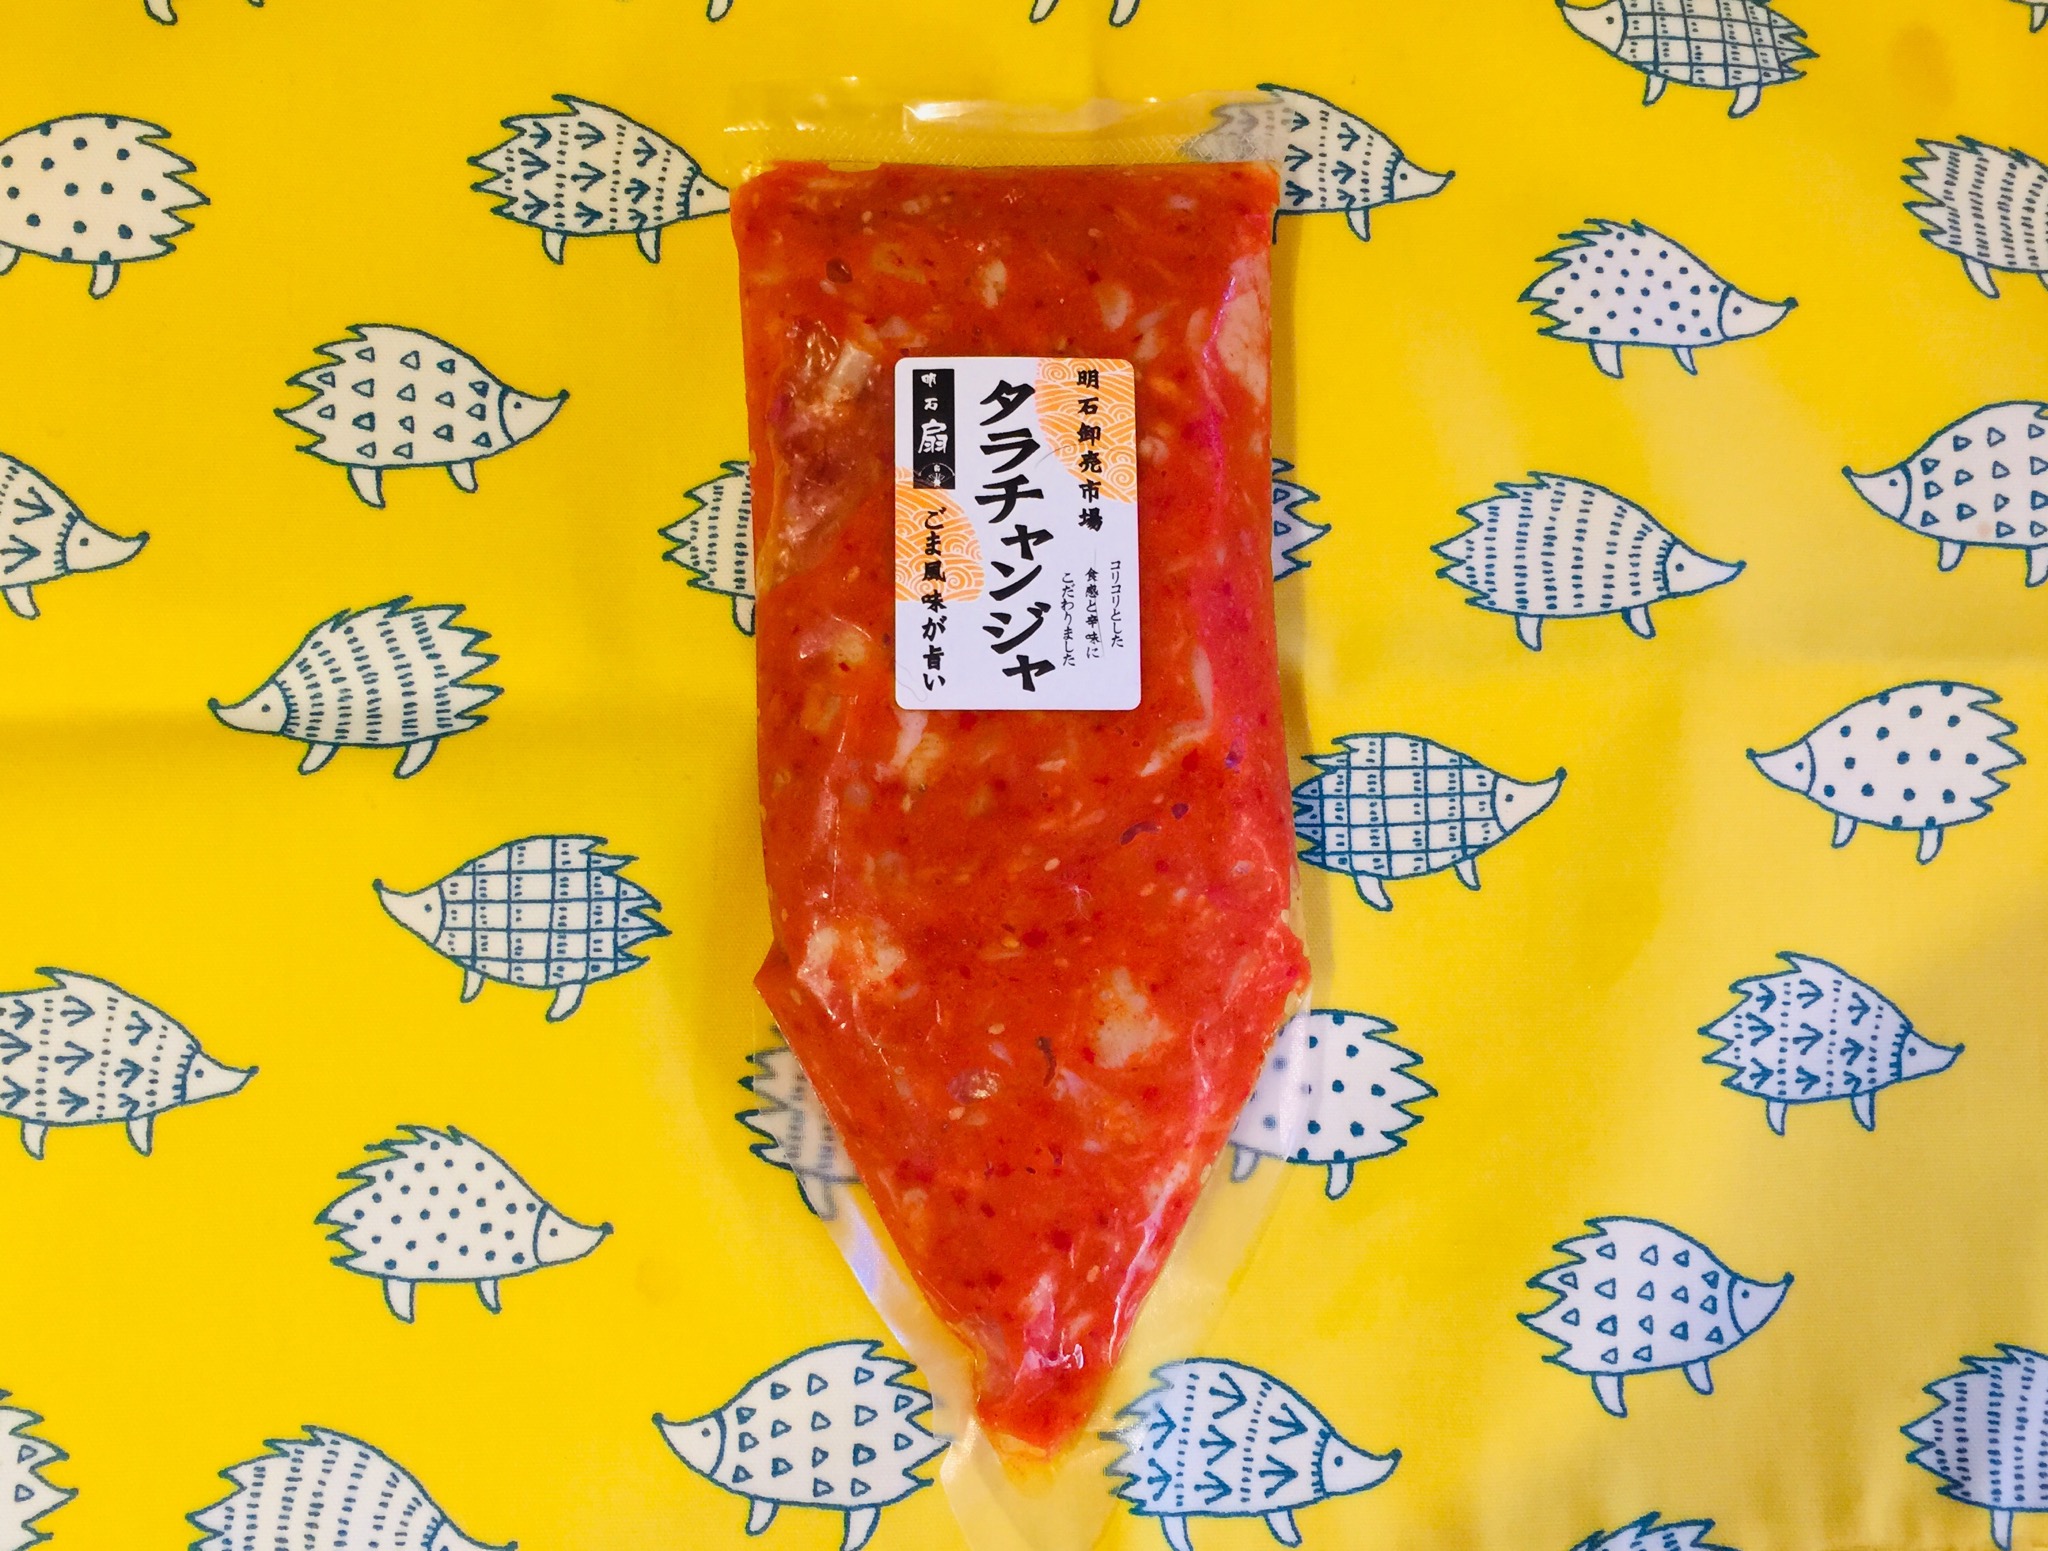 業務スーパー 冷凍タラ チャンジャ300g 兵庫県産 業務スーパーの商品をレポートするブログ